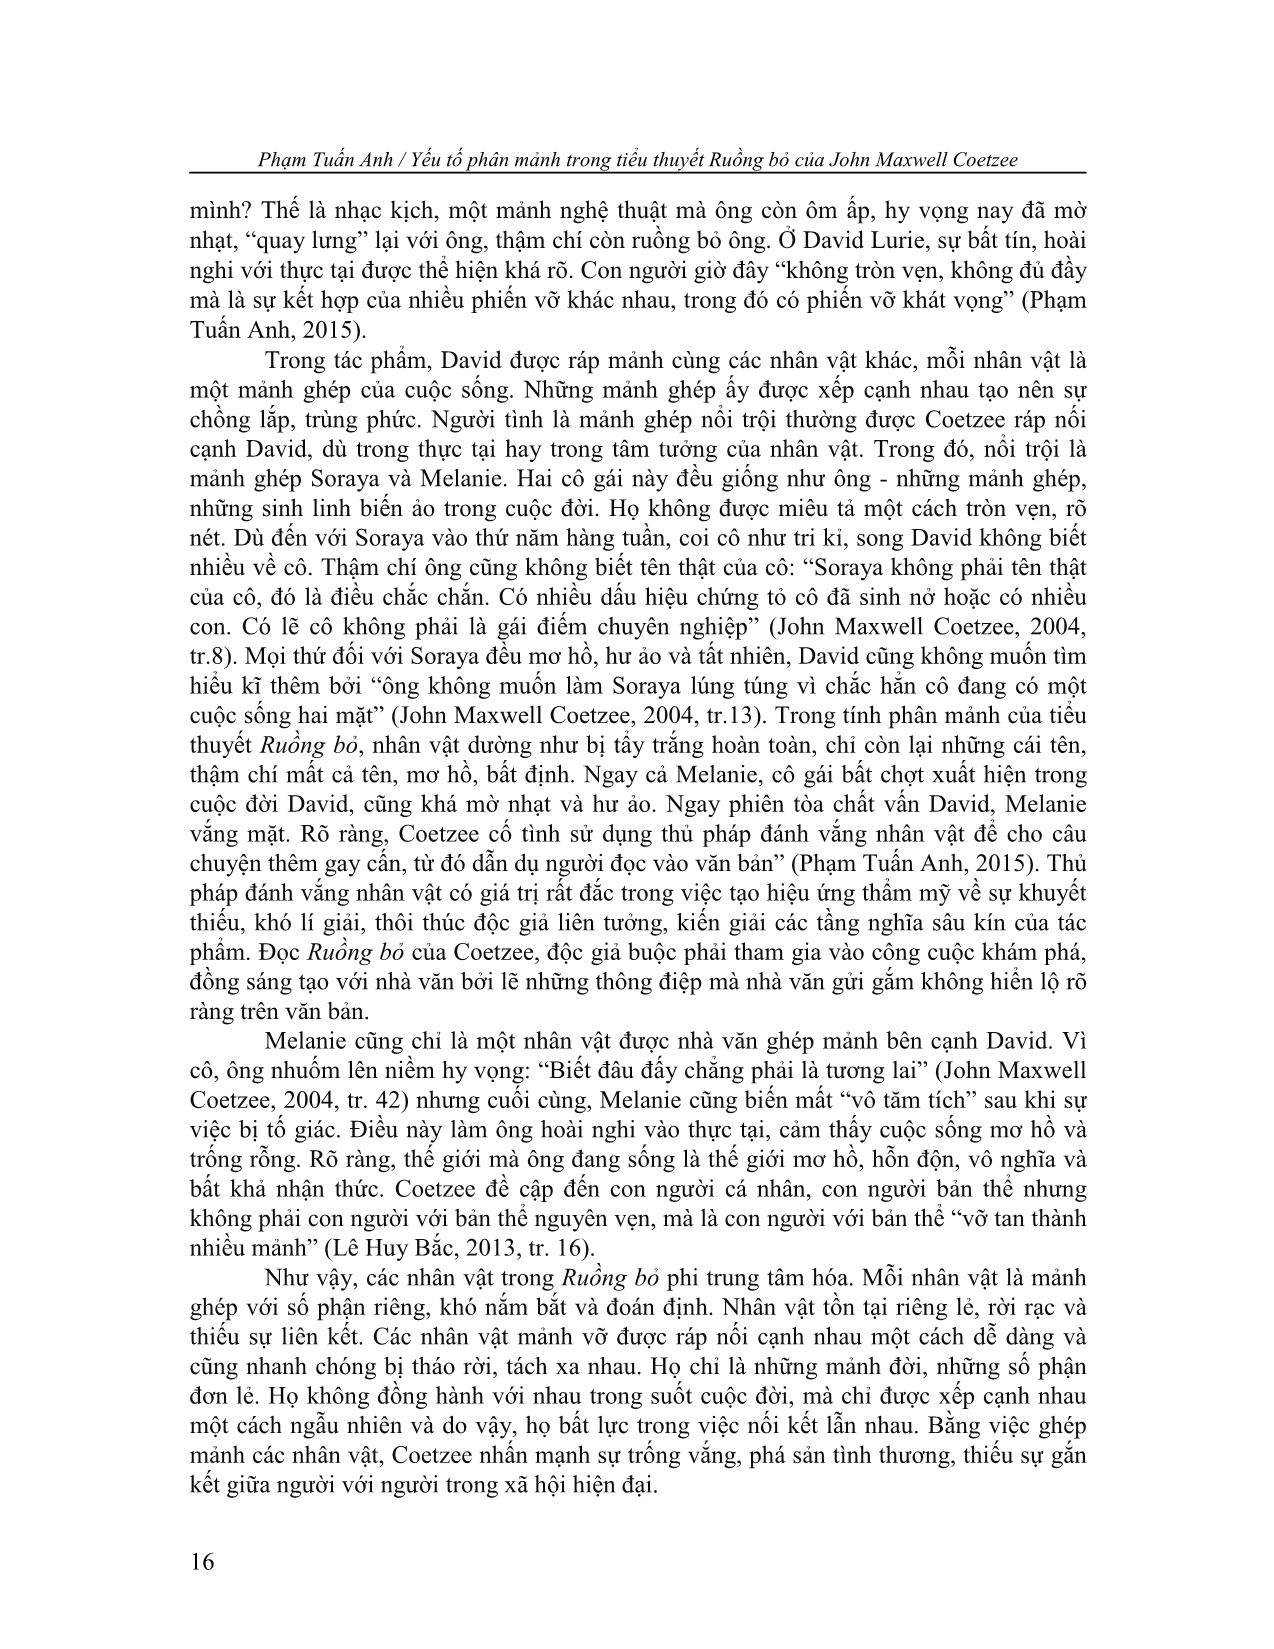 Yếu tố phân mảnh trong tiểu thuyết ruồng bỏ của john maxwell coetzee trang 6